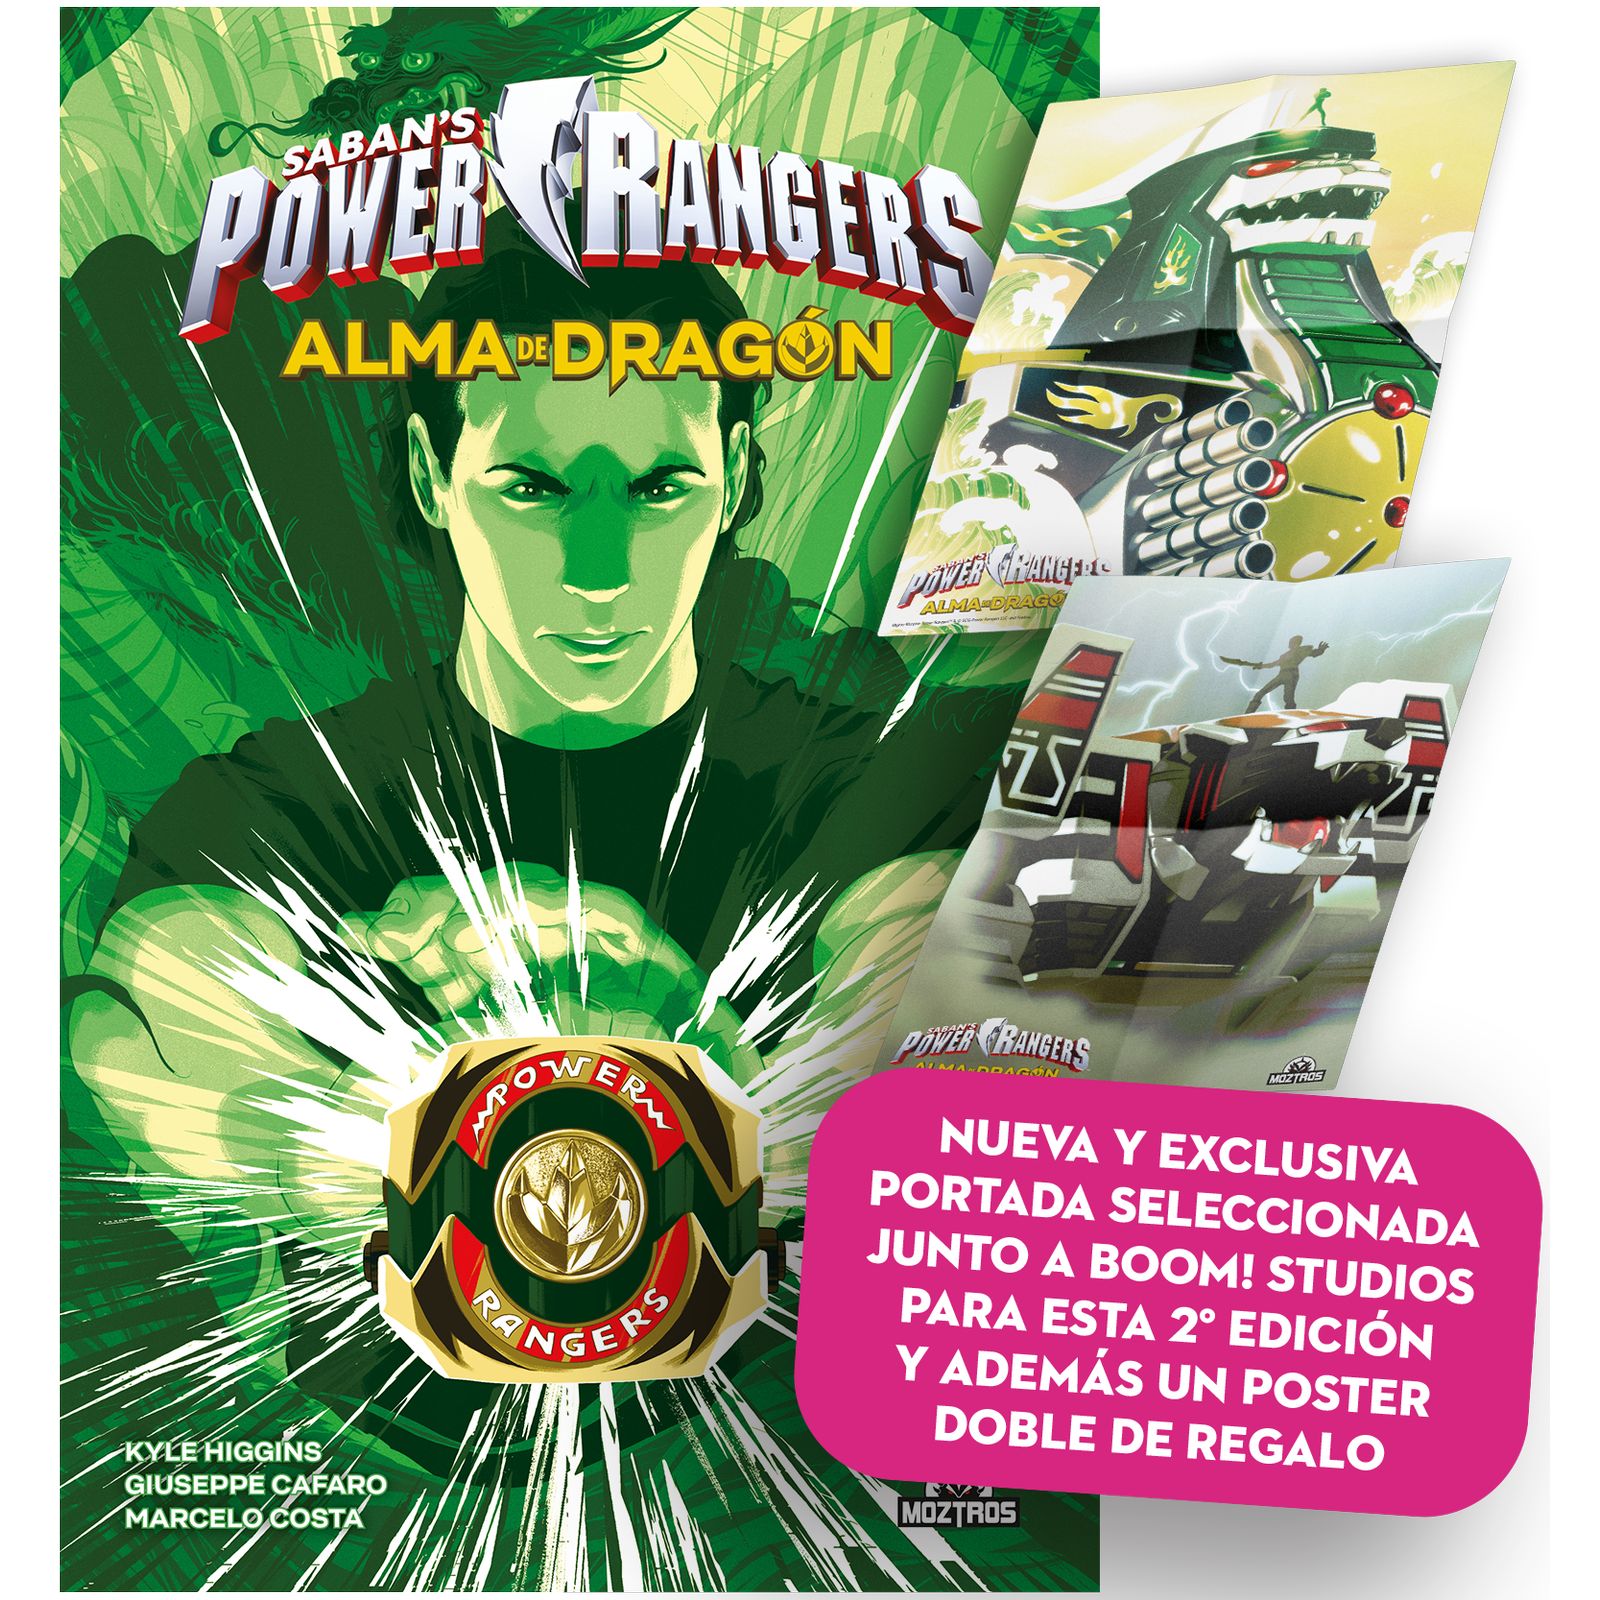 POWER RANGERS. ALMA DE DRAGON